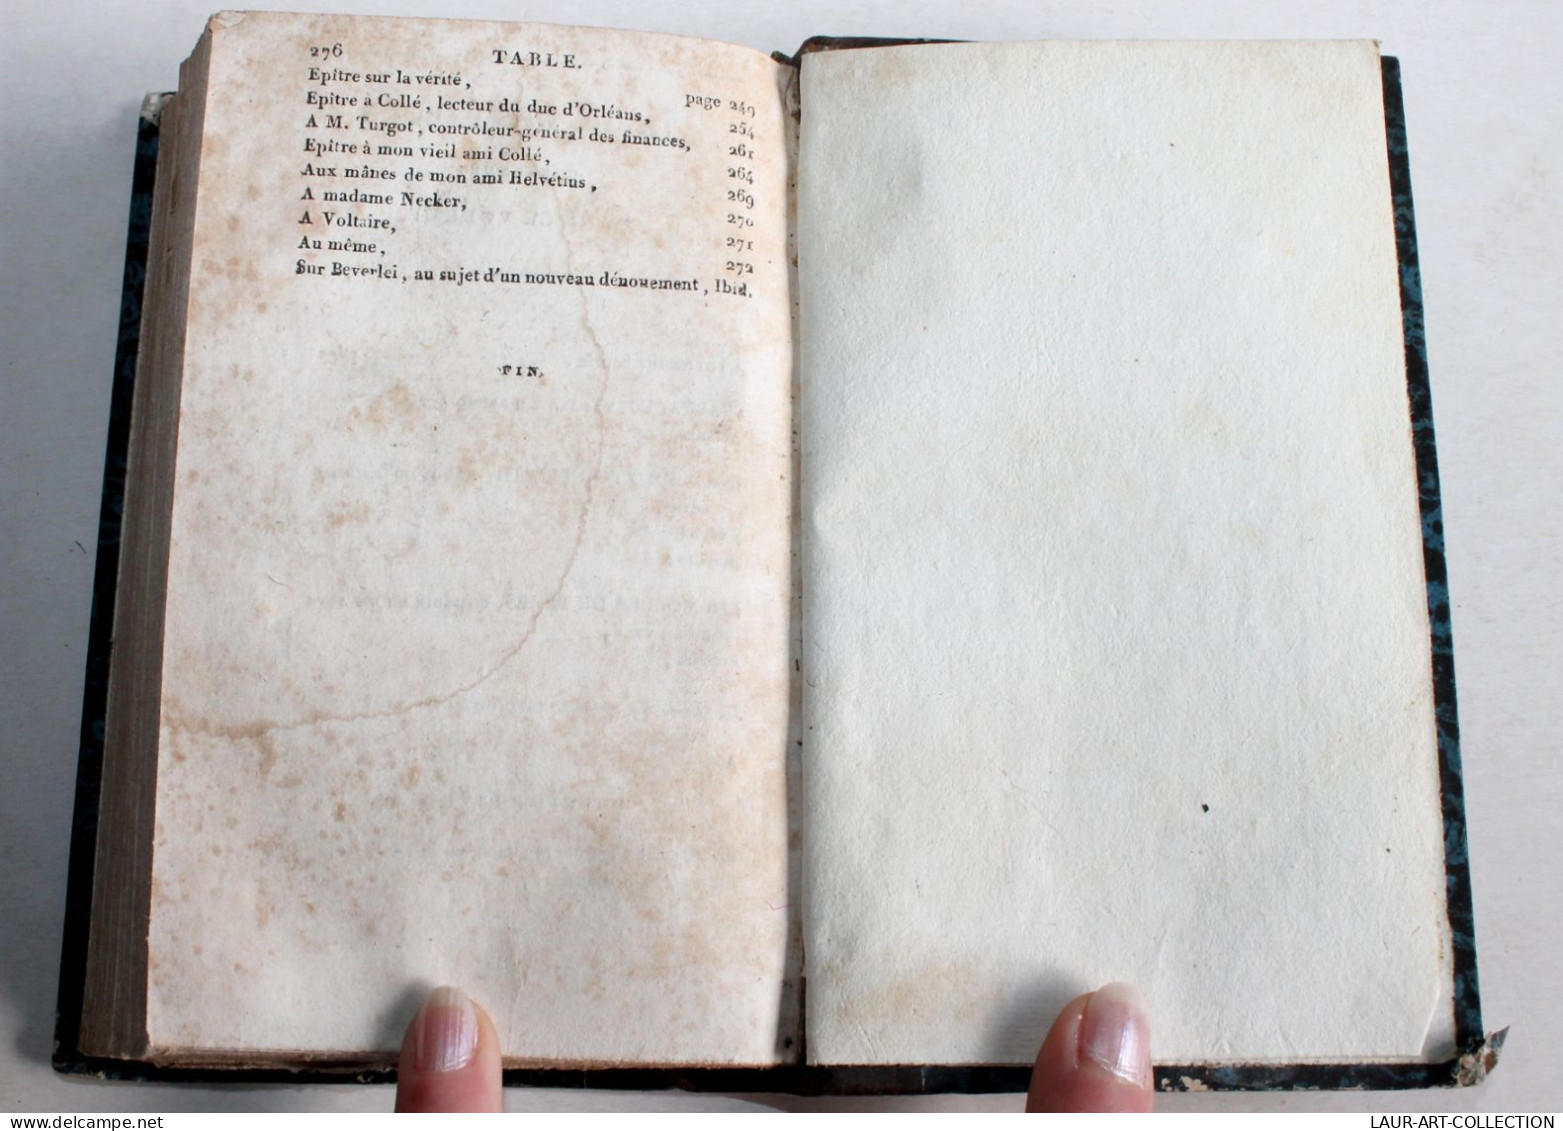 PIECE DE THEATRE OEUVRES CHOISIES DE SAURIN EDITION STEREOTYPE 1820 FIRMIN DIDOT / ANCIEN LIVRE XIXe SIECLE (1803.100) - Autori Francesi